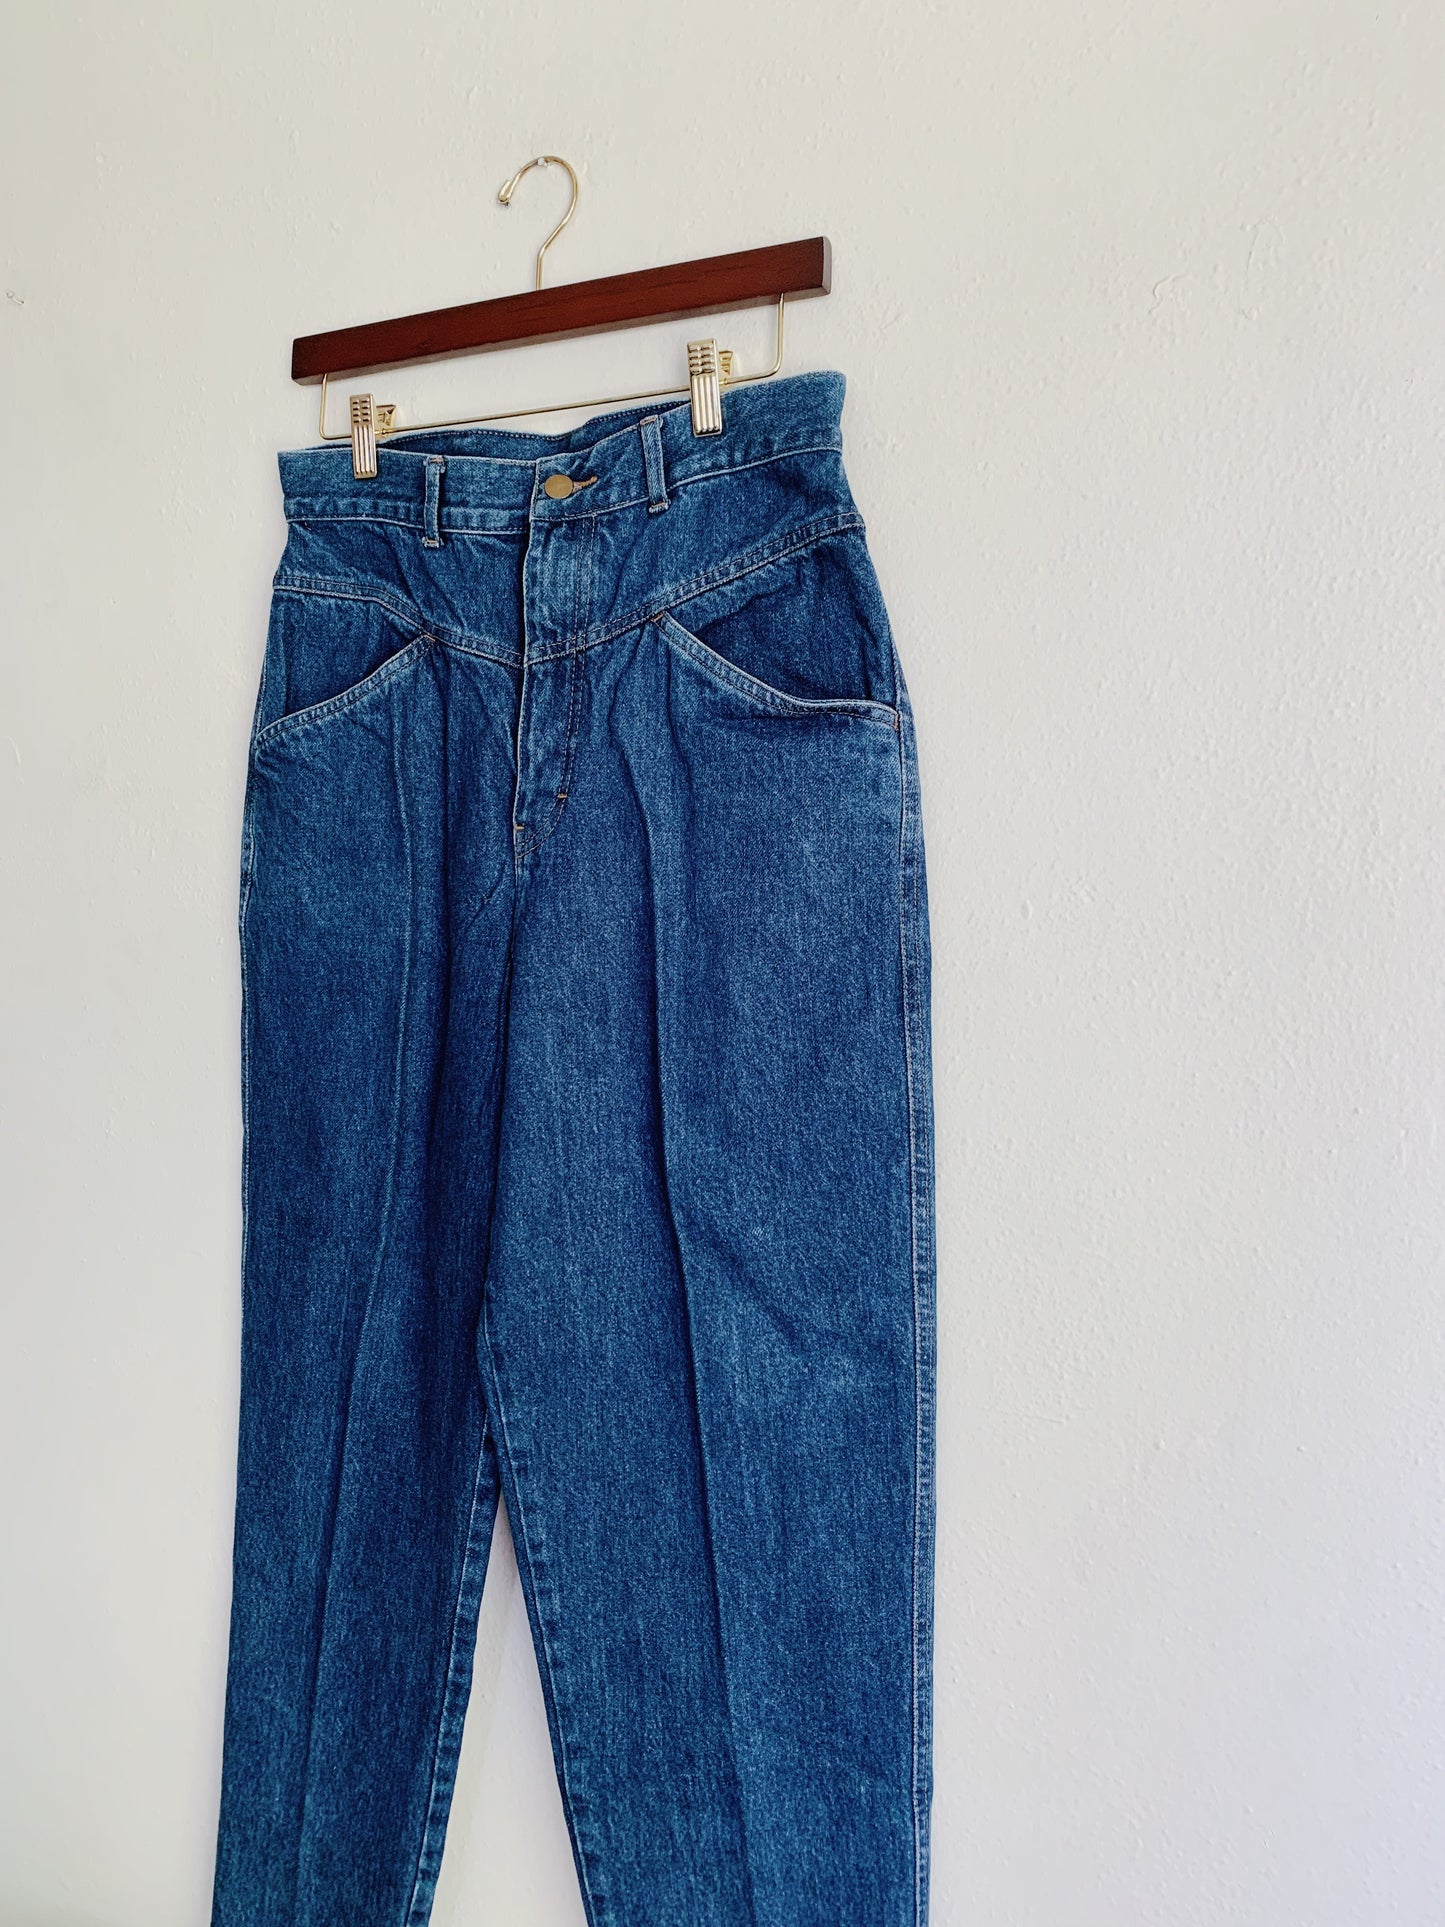 Vintage Denim Republic Jeans (30x27)